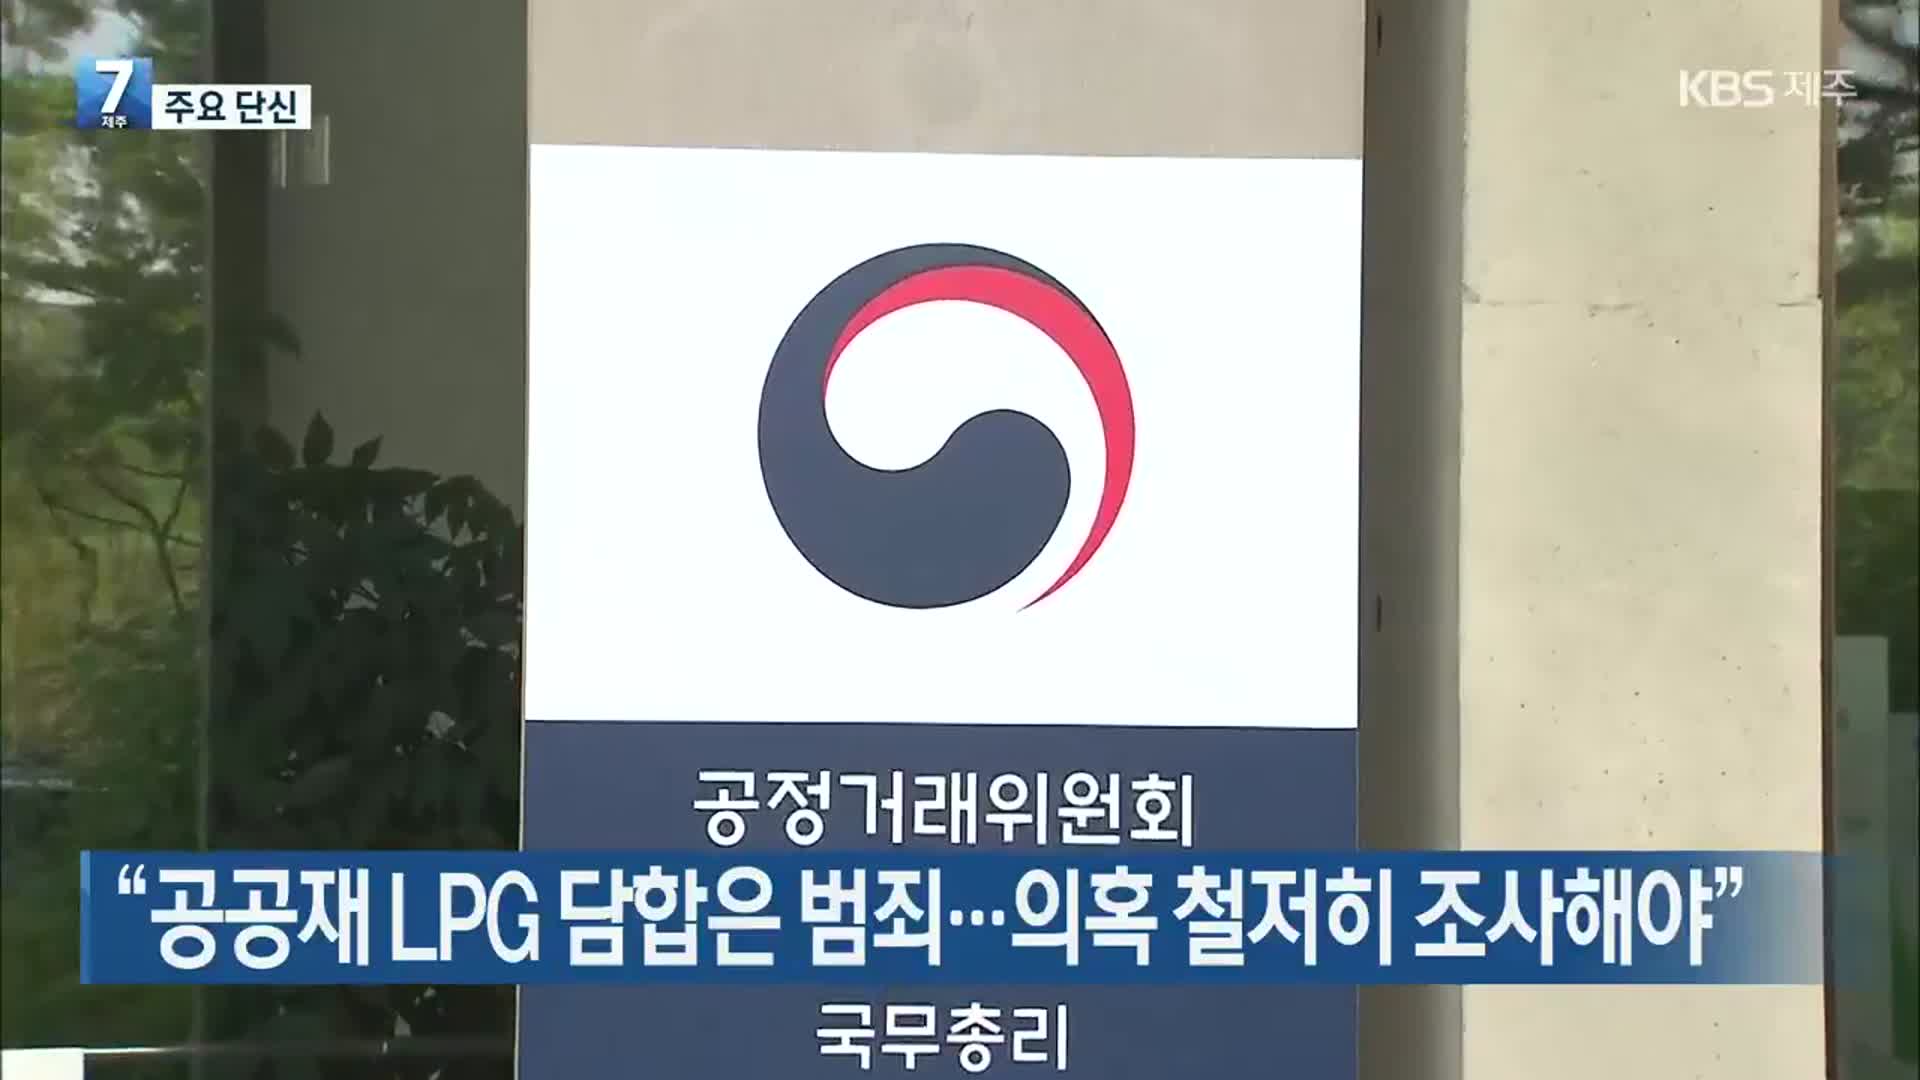 [뉴스브리핑] “공공재 LPG 담합은 범죄…의혹 철저히 조사해야” 외